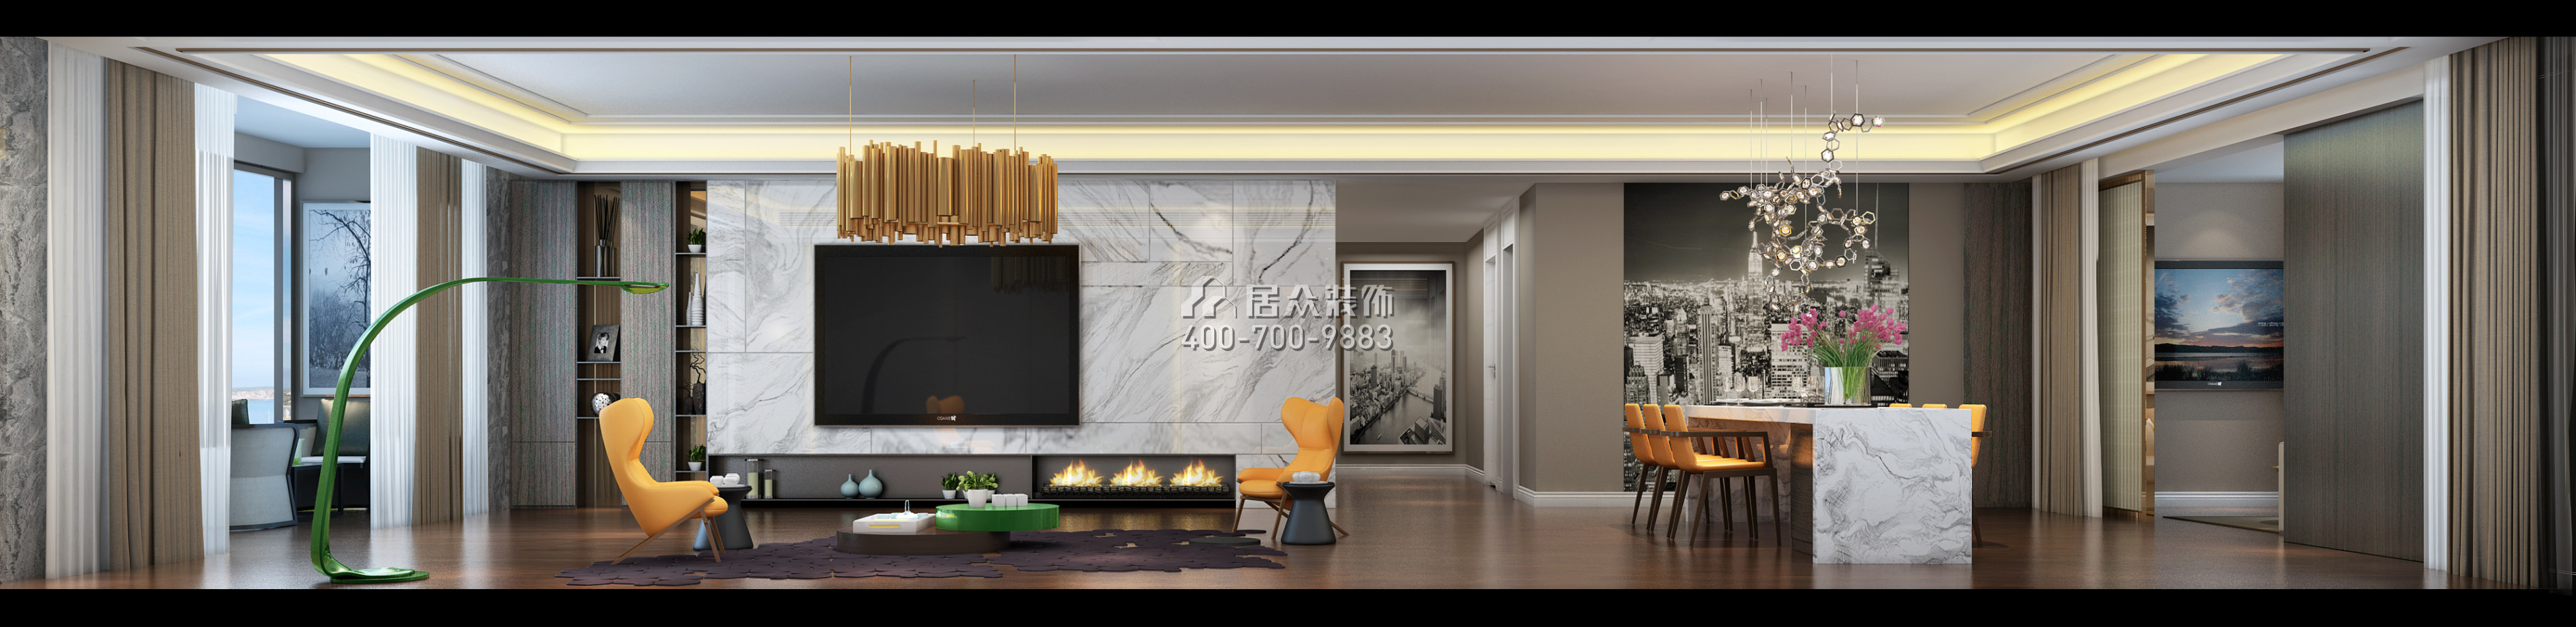 融科紫檀250平方米其他風格平層戶型客廳裝修效果圖